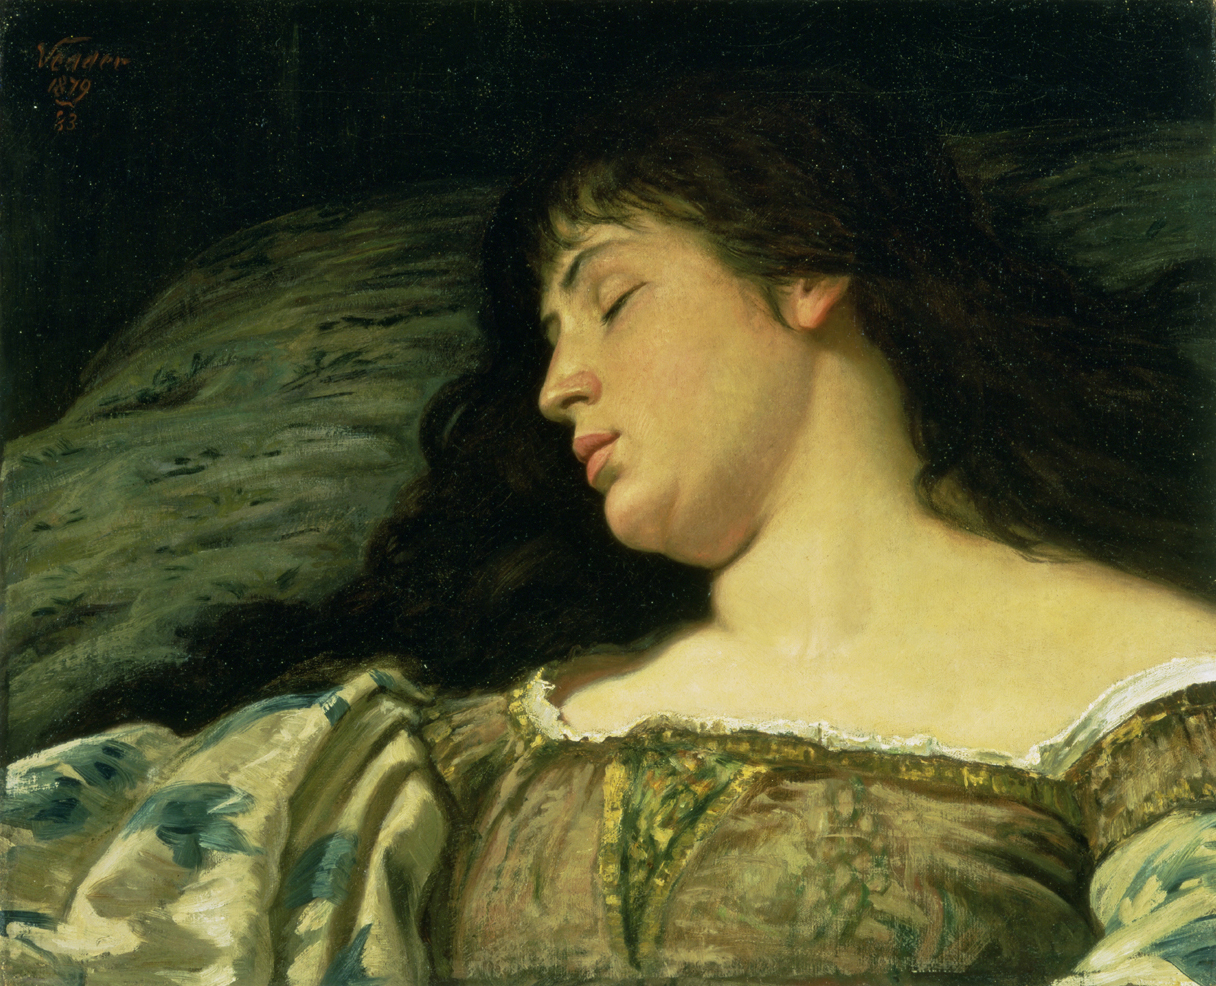 The Sleeping Girl